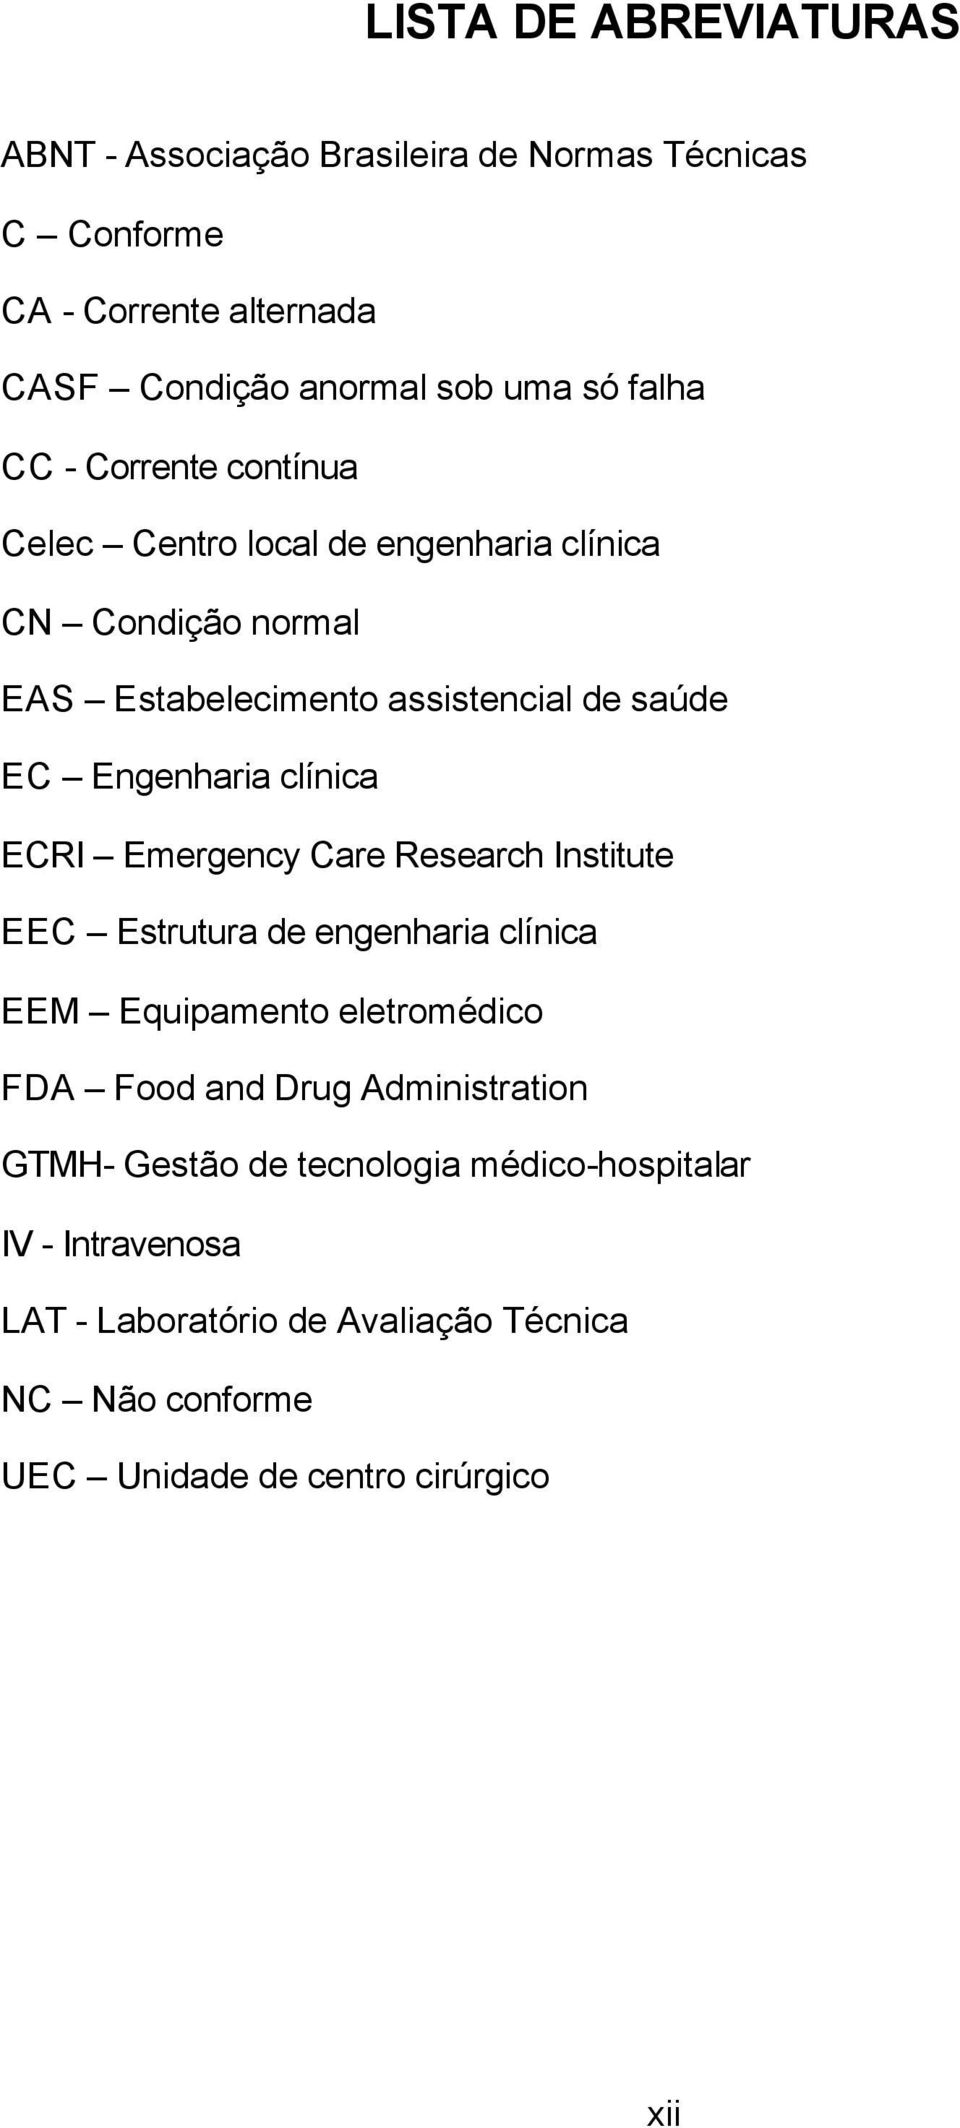 clínica ECRI Emergency Care Research Institute EEC Estrutura de engenharia clínica EEM Equipamento eletromédico FDA Food and Drug Administration